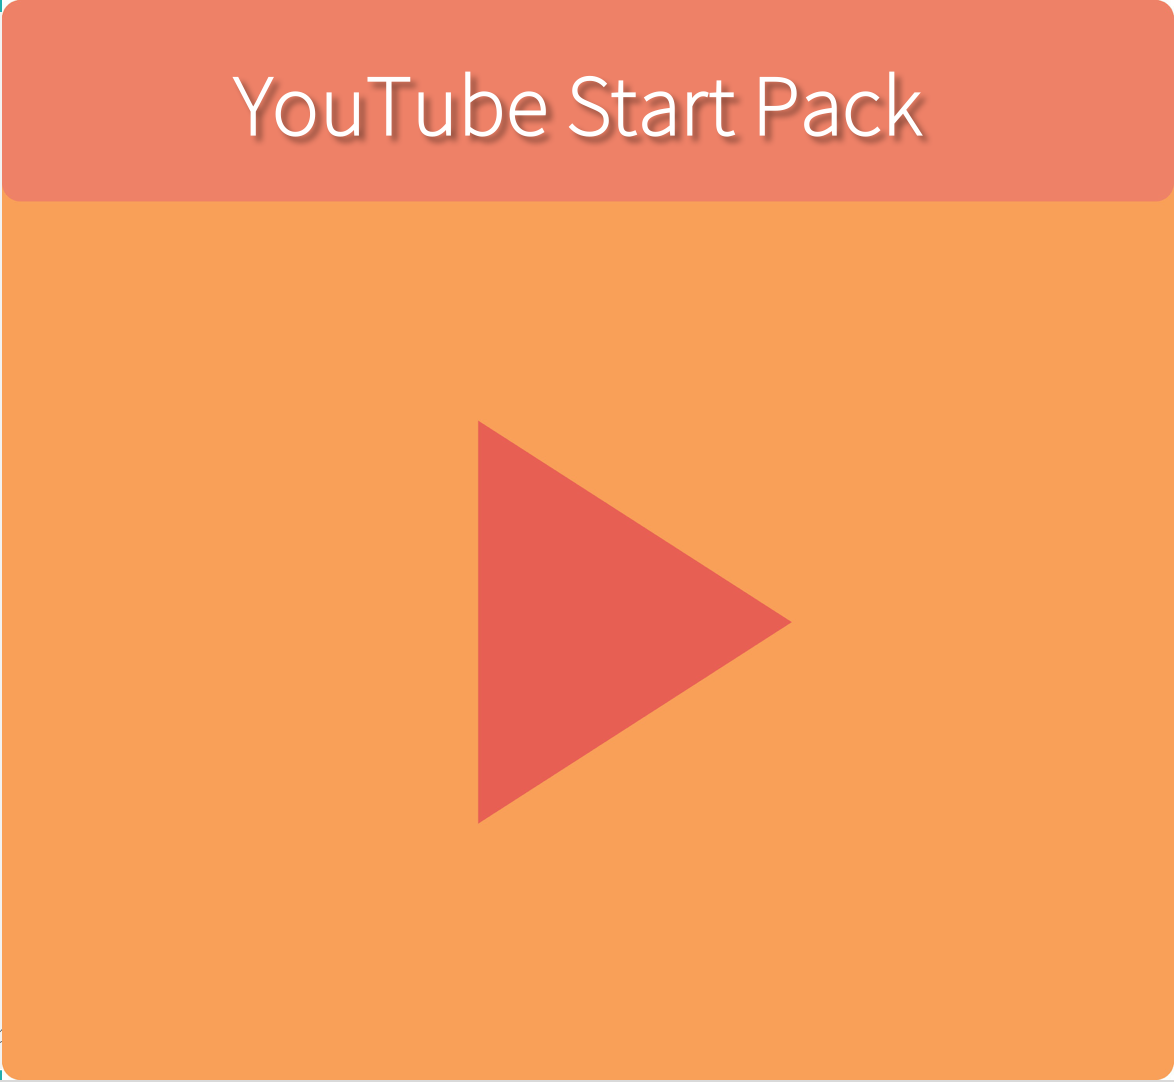 YouTubeStartPack